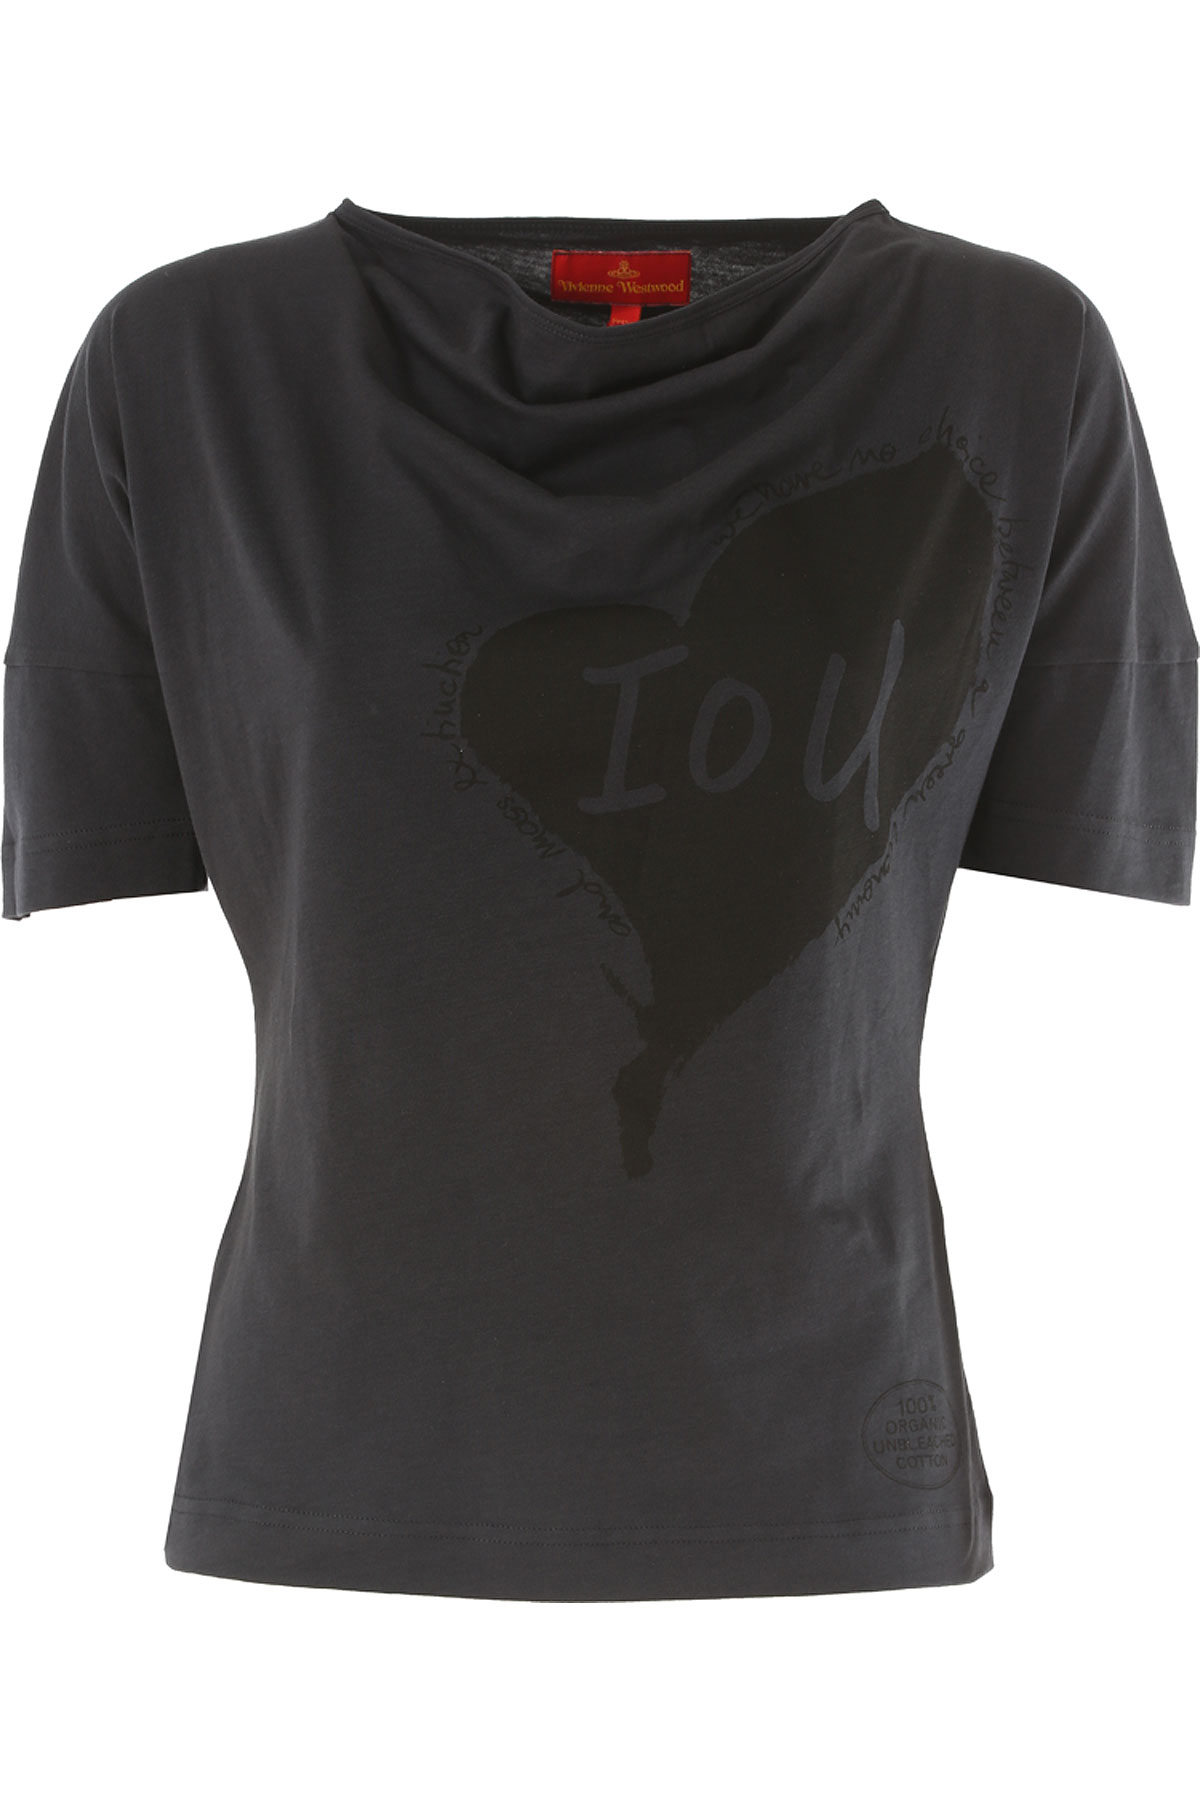 Vivienne Westwood T-shirt Femme , Noir, Coton, 2017, 40 42